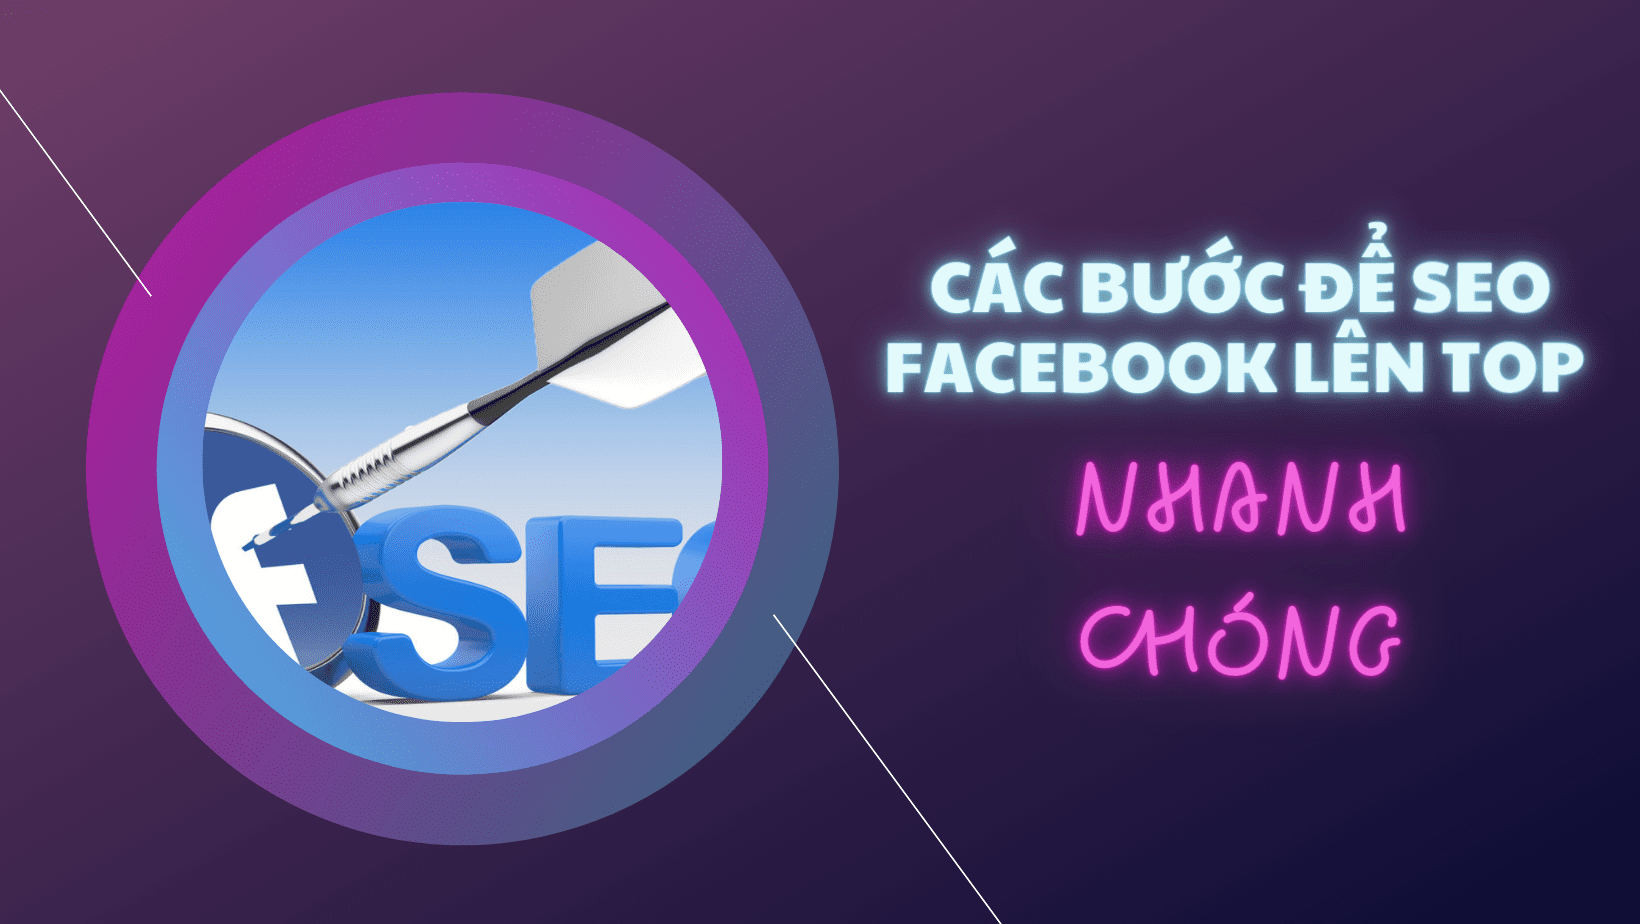 Các bước để SEO Facebook lên TOP - Phần mềm SEO Facebook